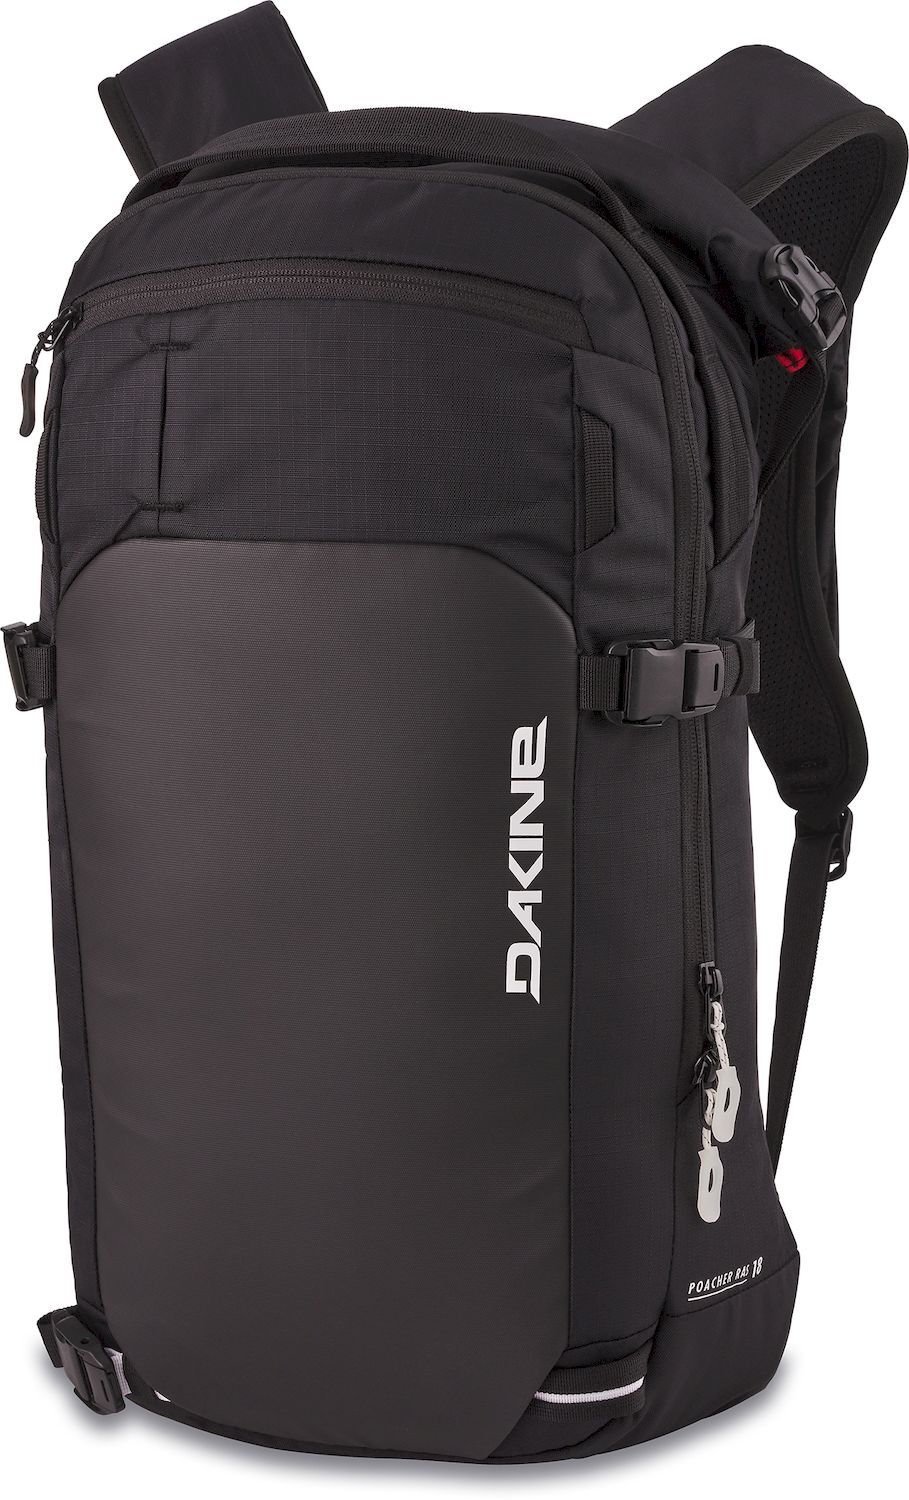 Dakine Poacher Ras 18L - Ski backpack - Men's